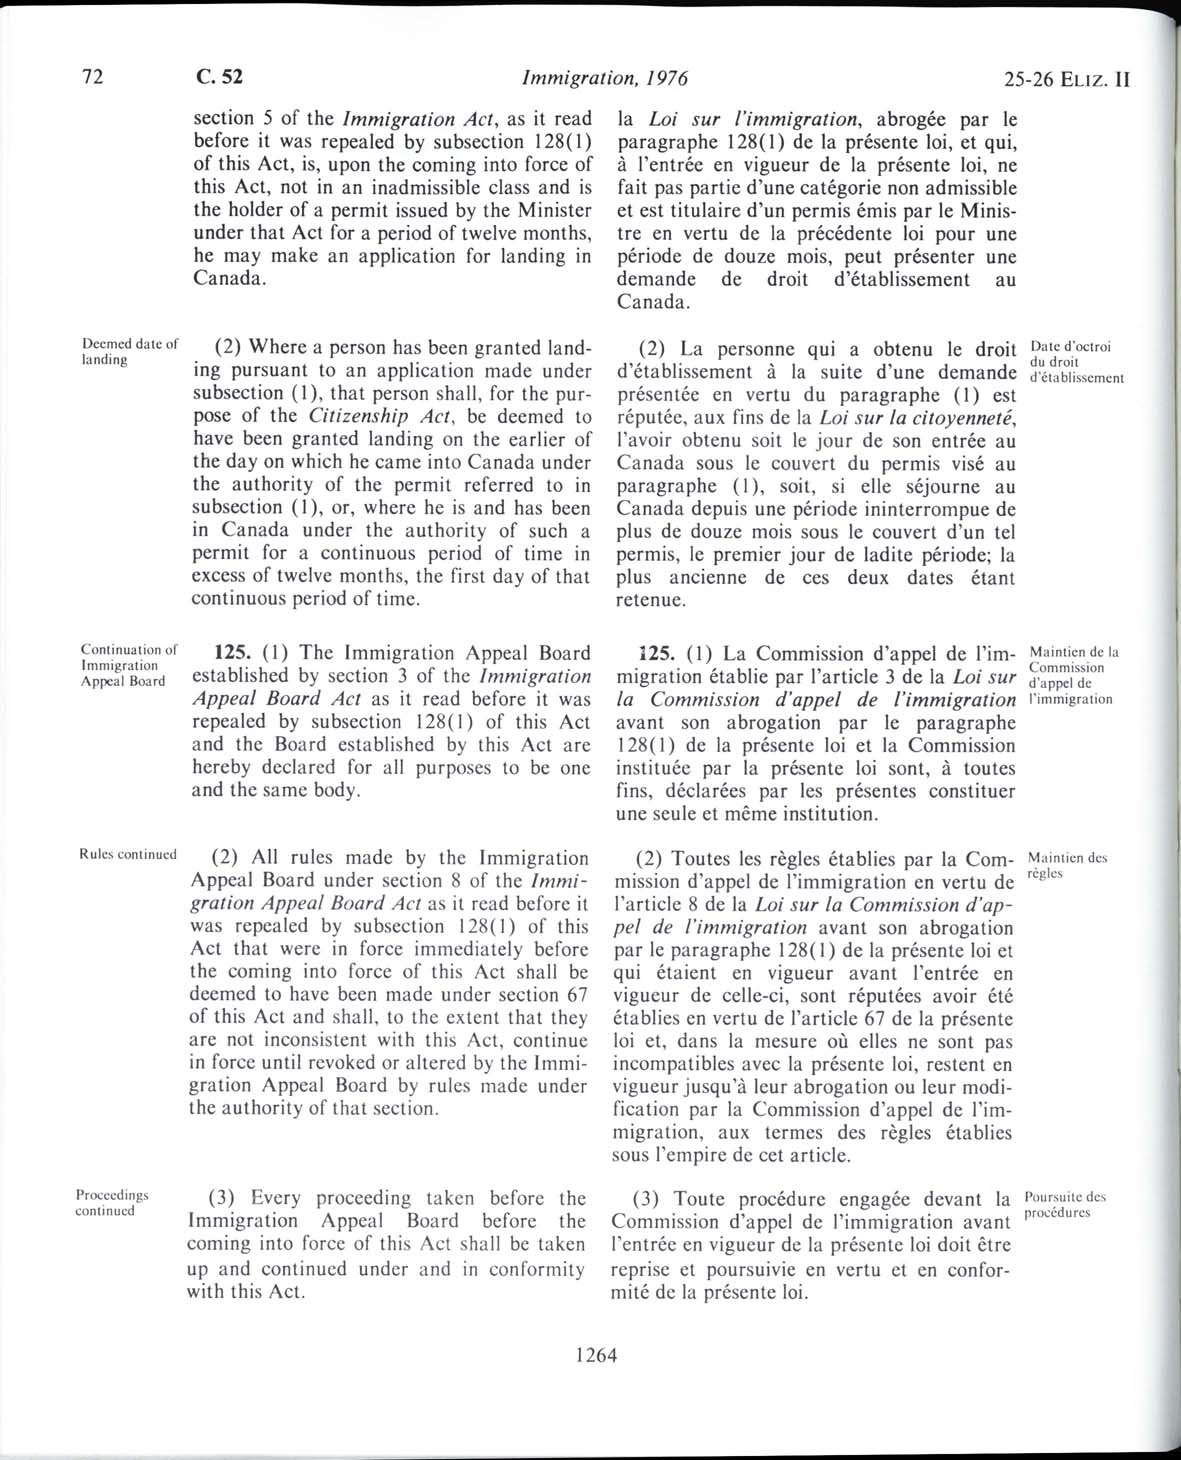 Page 1264 Loi sur l’immigration de 1976